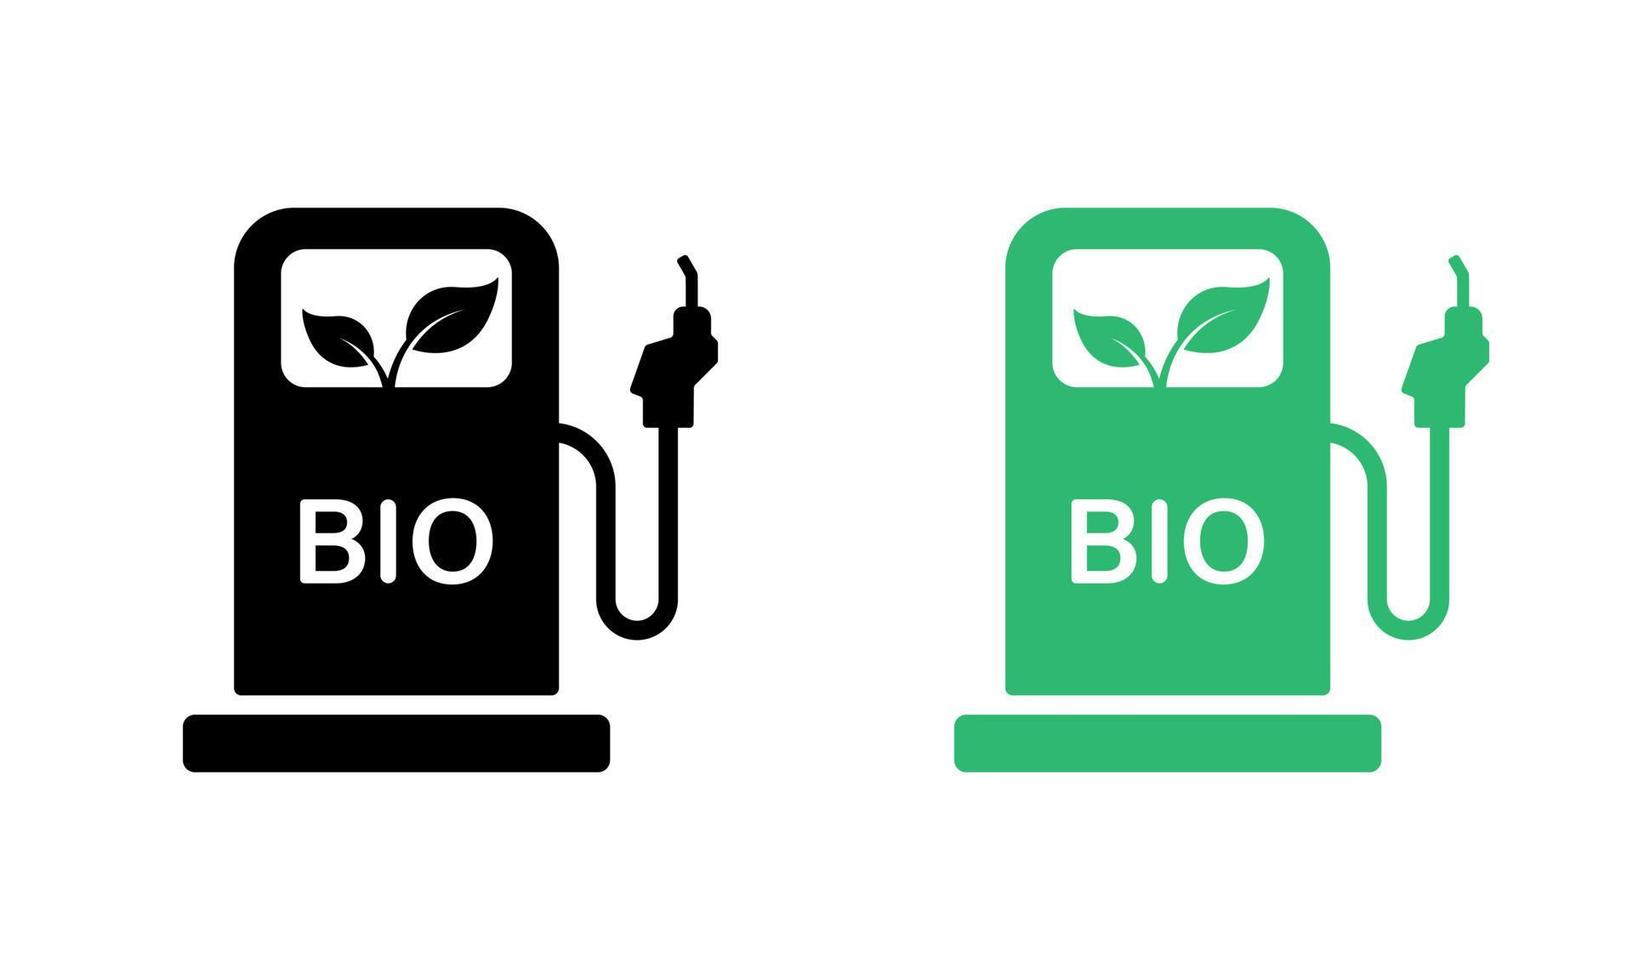 bio silueta icono colocar. ambiental natural biocombustible alternativa gas. ecología diesel petróleo estación glifo pictograma. orgánico verde energía en gasolina bomba icono. aislado vector ilustración.